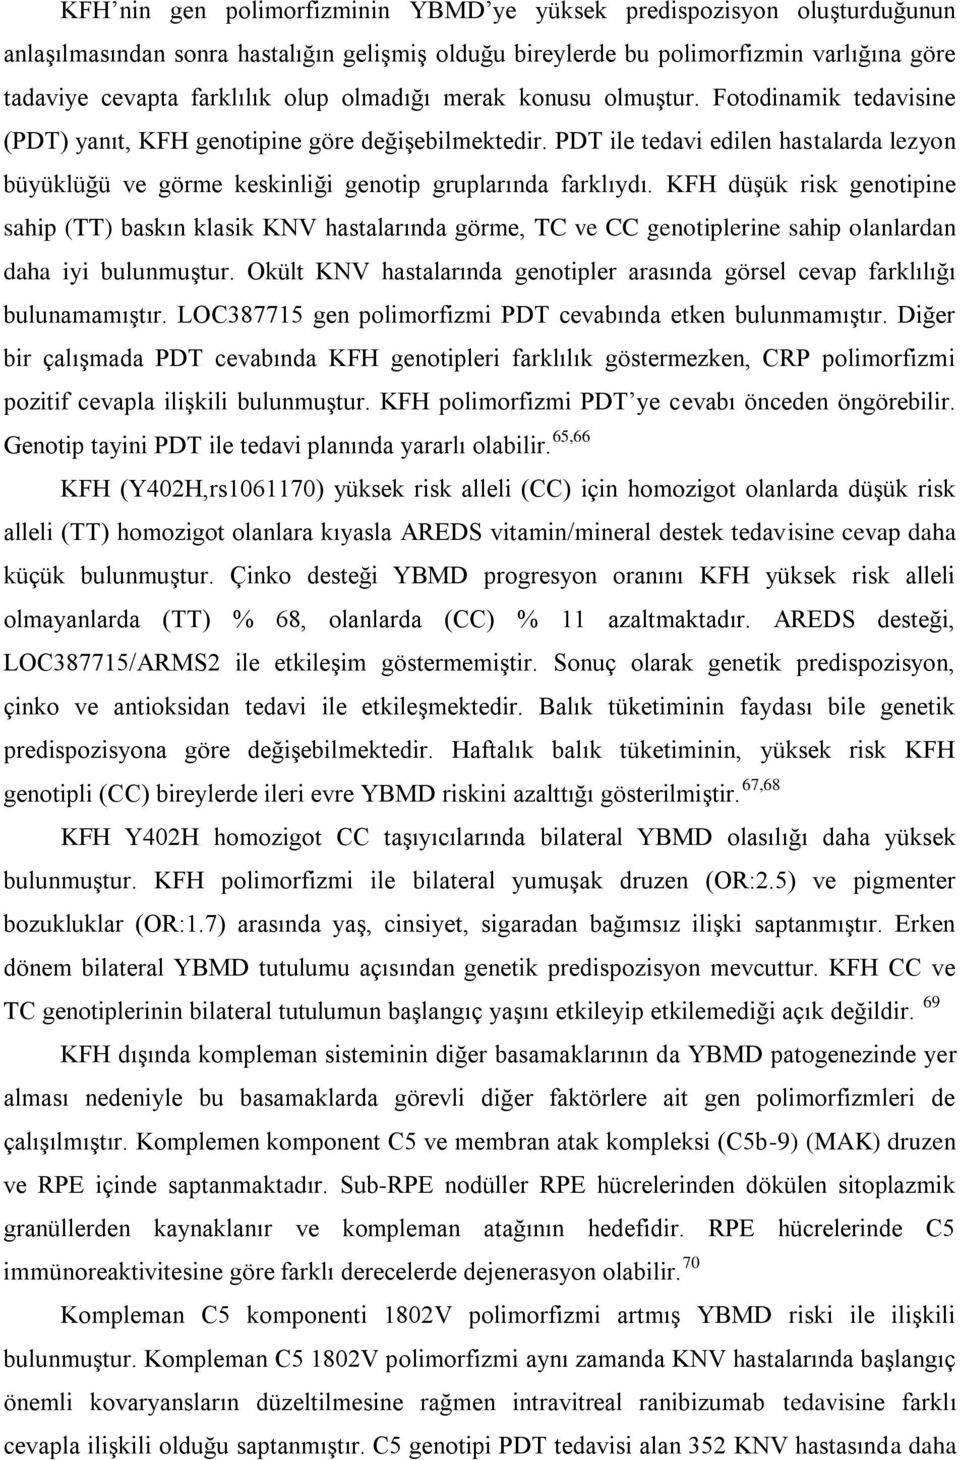 PDT ile tedavi edilen hastalarda lezyon büyüklüğü ve görme keskinliği genotip gruplarında farklıydı.